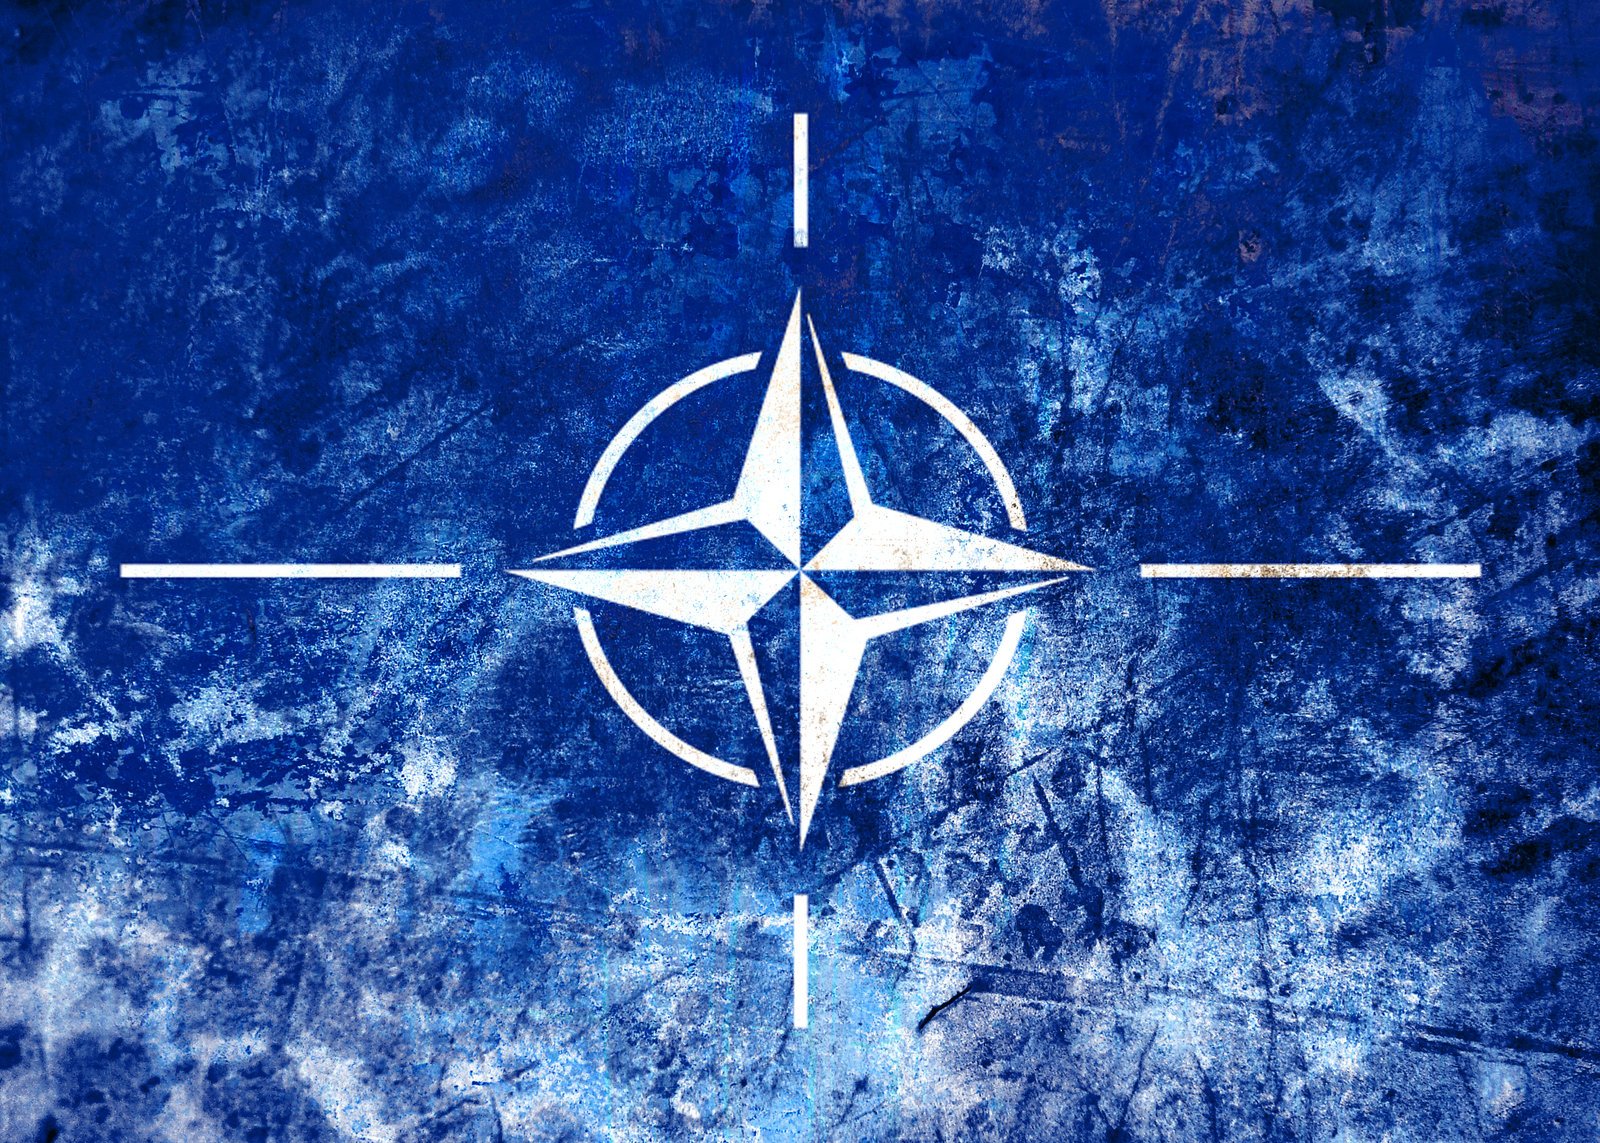 Нато аналитика. Флаг НАТО 1949. Североатлантический Альянс НАТО. Флаг Североатлантического Альянса. NATO (North Atlantic Treaty Organization) - Североатлантический военный Альянс (НАТО)..